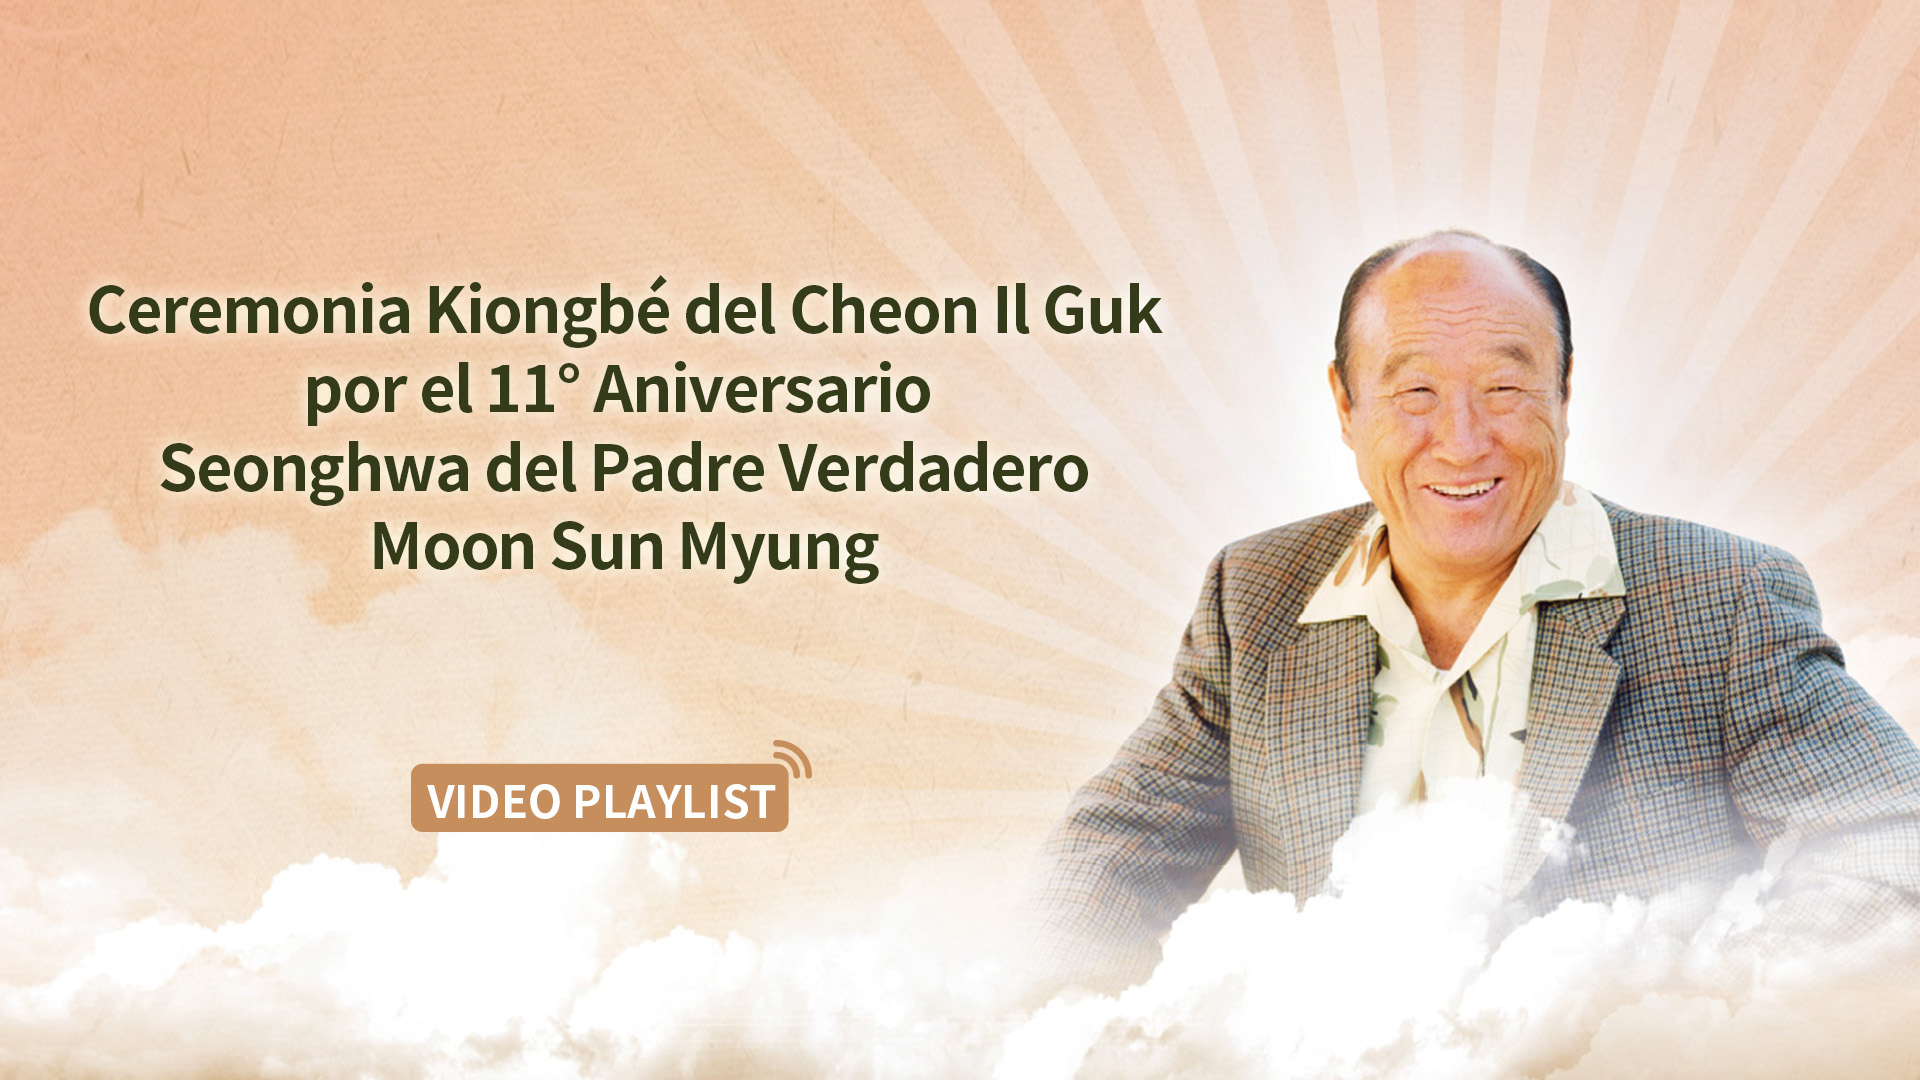 Ceremonia Kiongbé del Cheon Il Guk por el 11° Aniversario de la Ascensión Cósmica